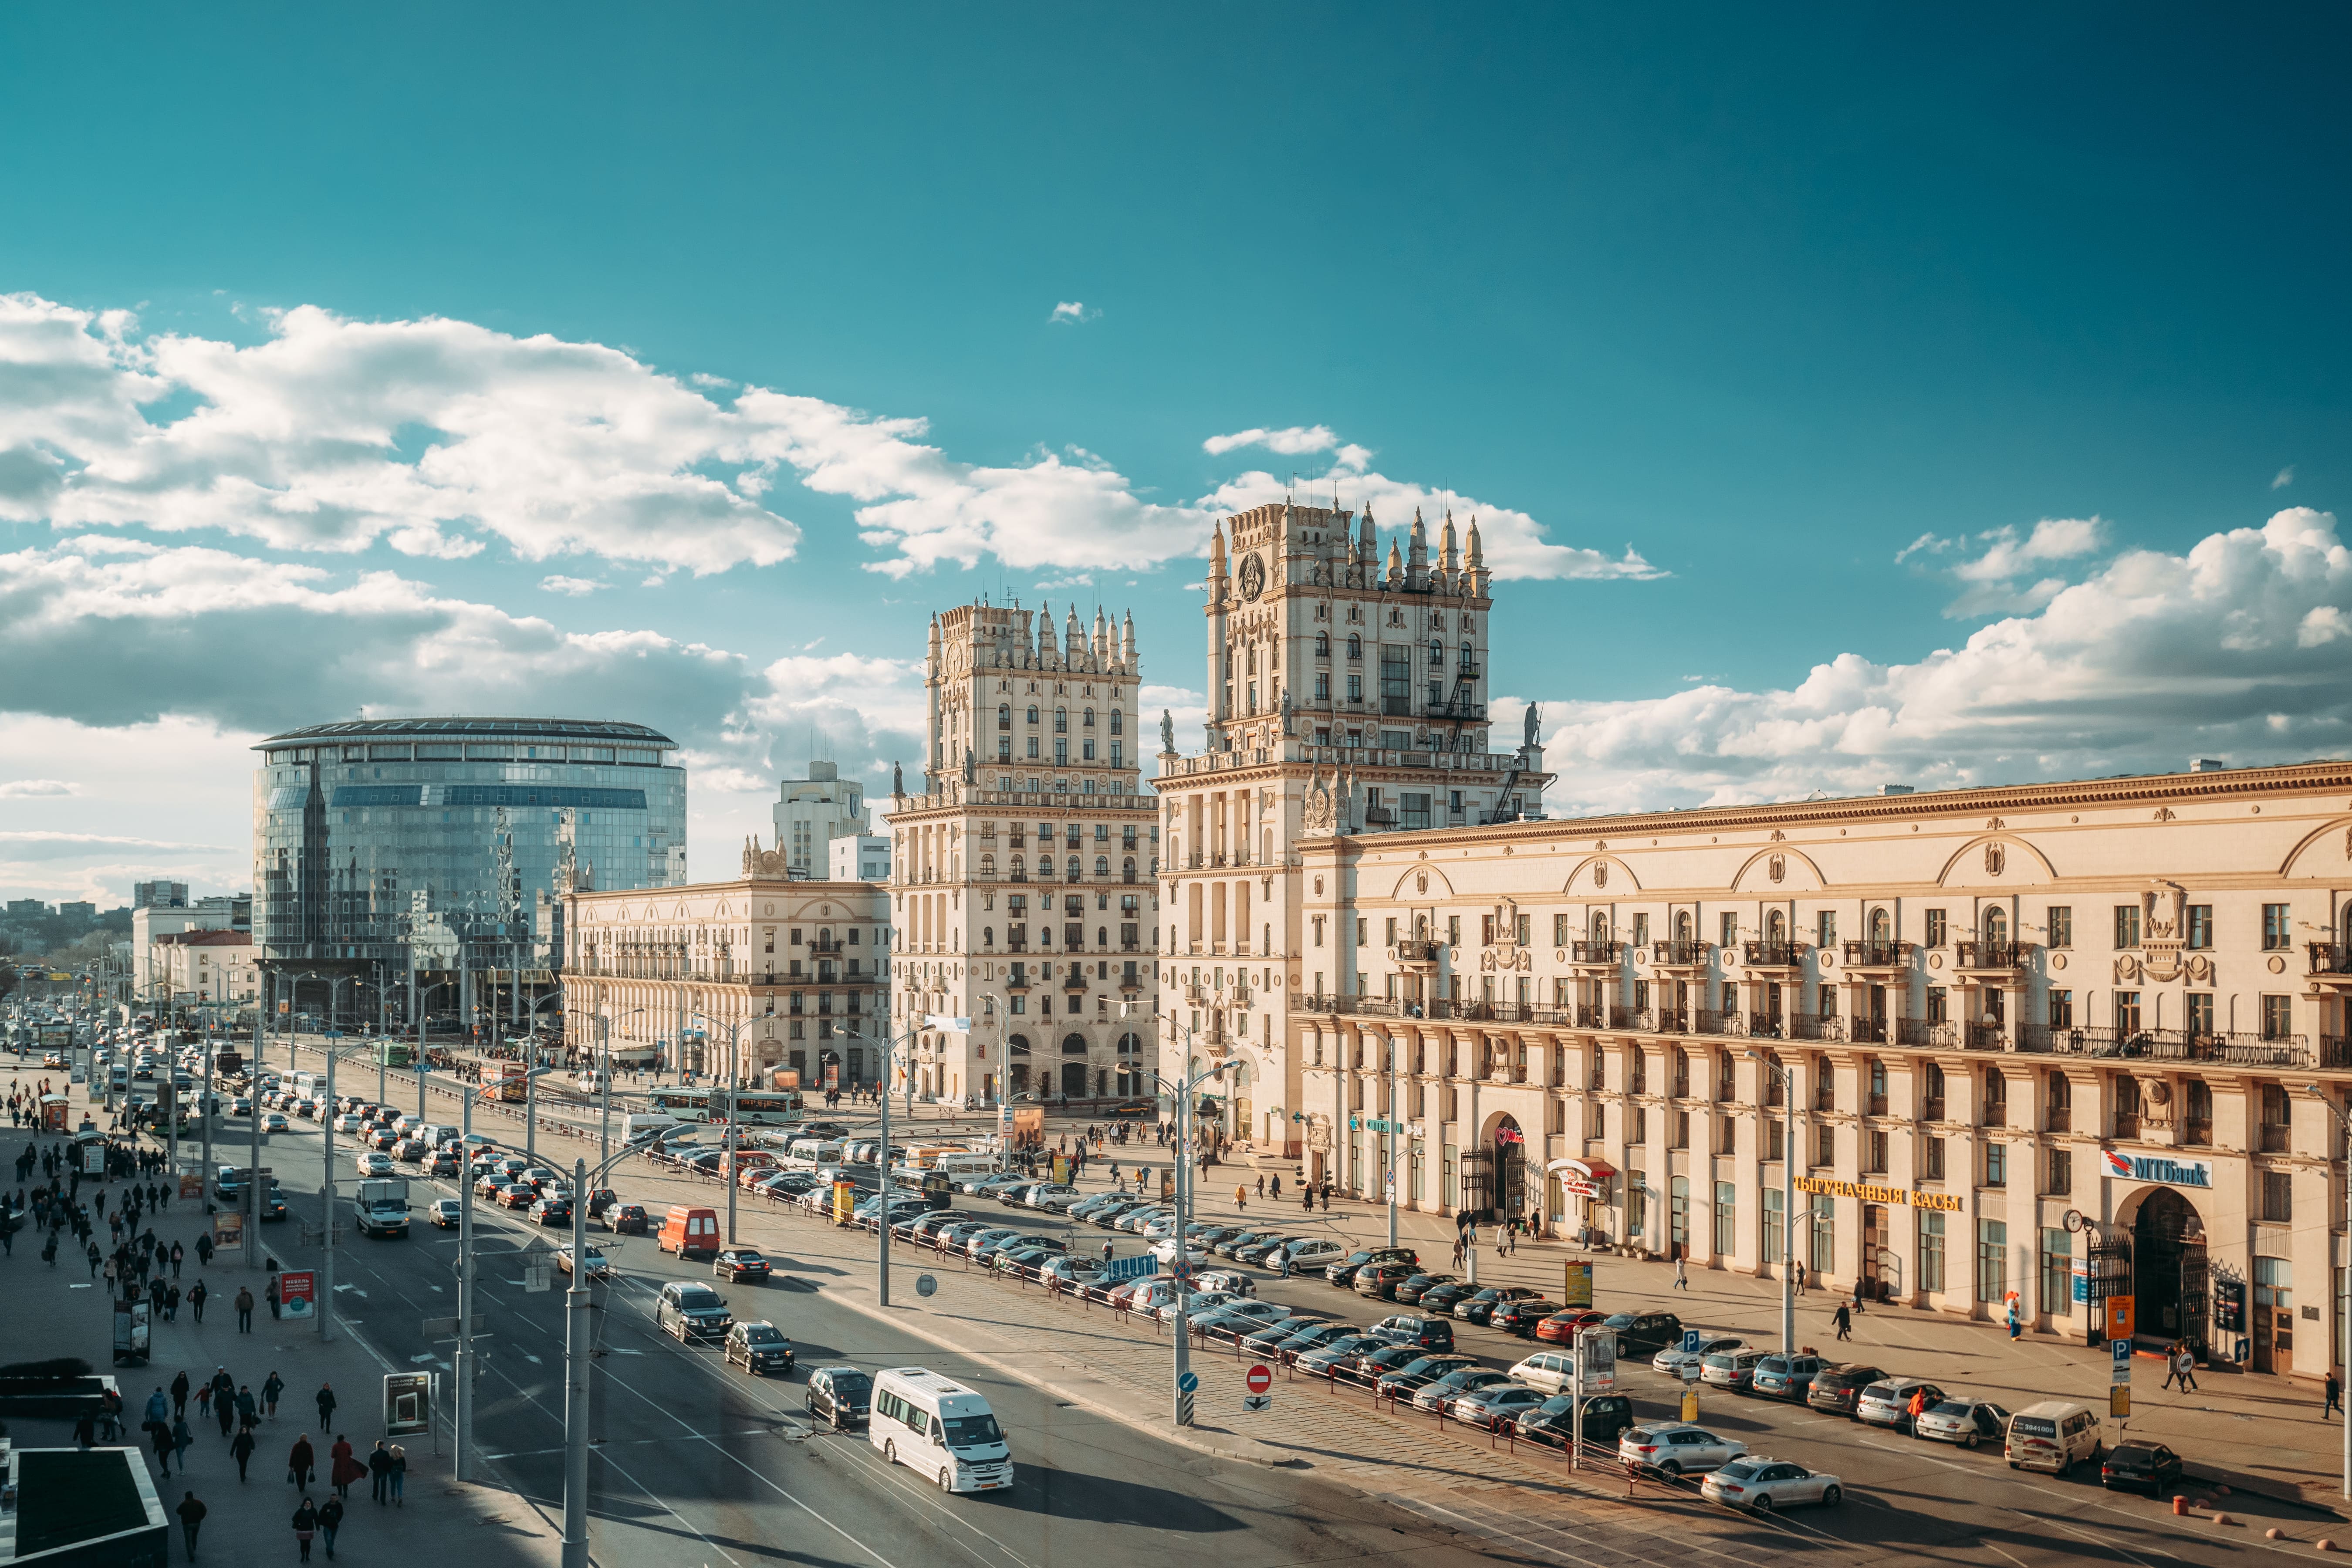 В Москве пройдет бизнес-конференция, посвященная инвестициям в белорусскую экономику